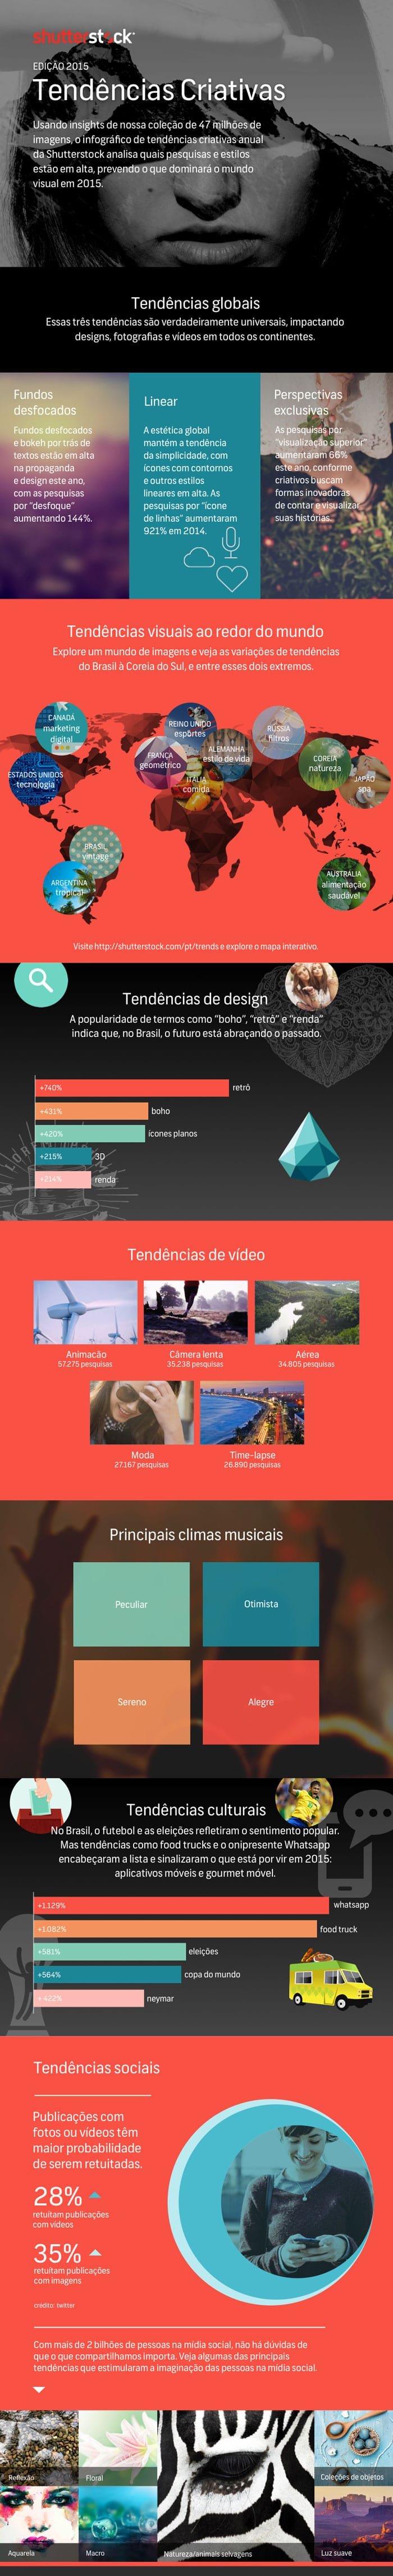 tendencias-criativas-2015-infografico